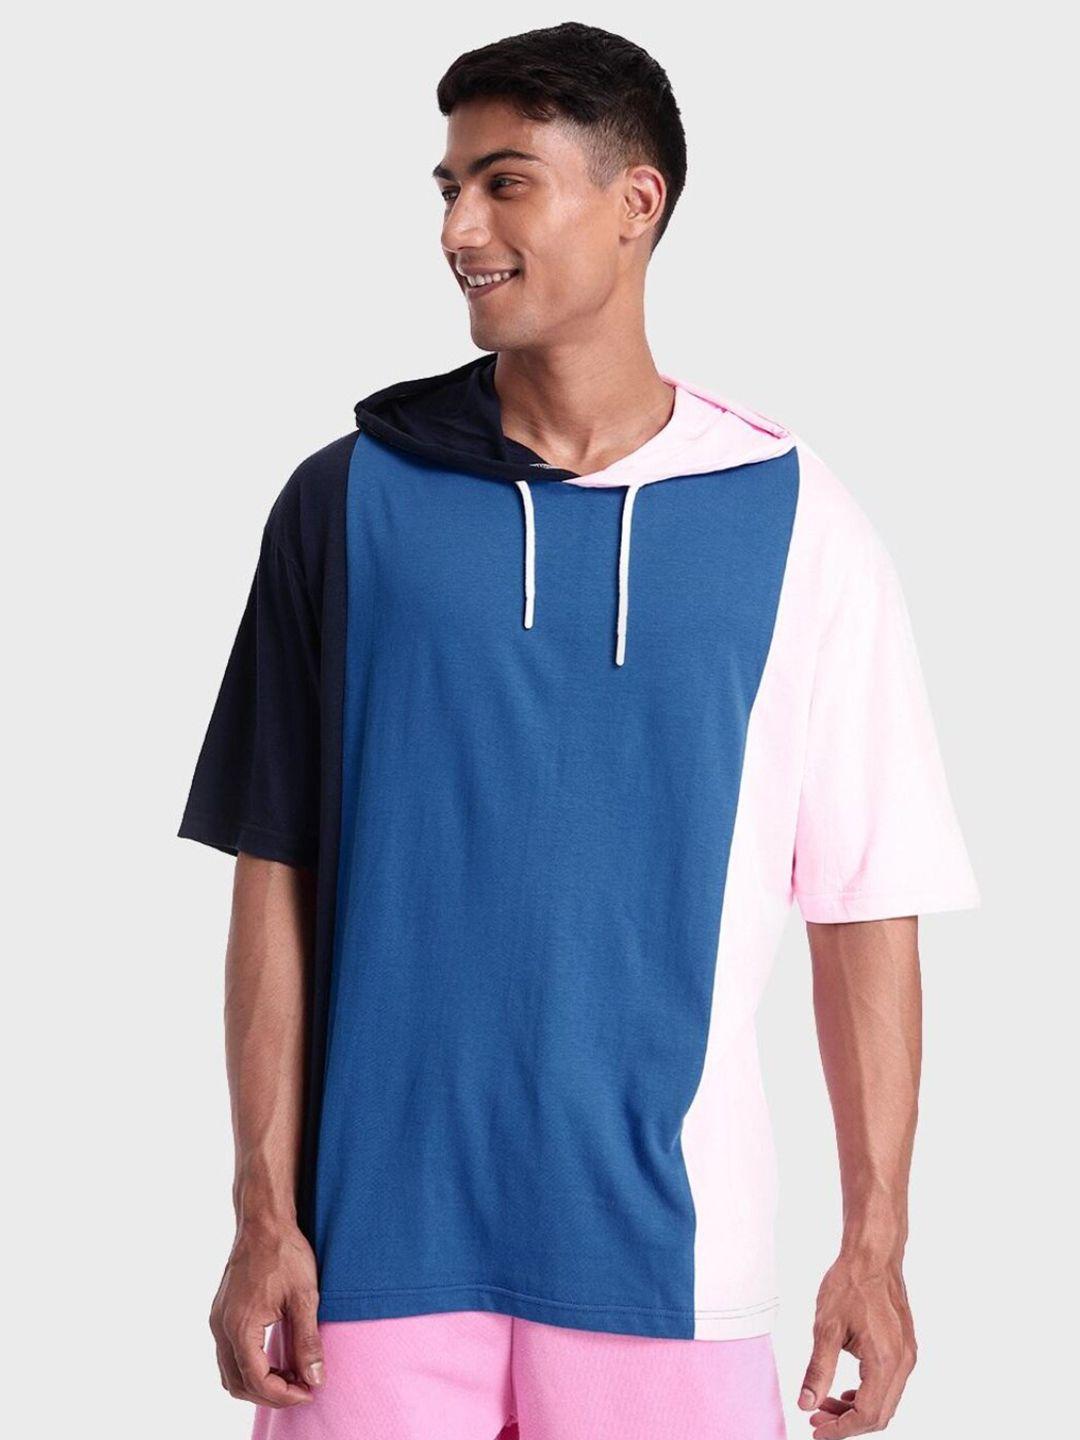 bewakoof-men-cotton-colourblocked-oversized-hooded-sweatshirt